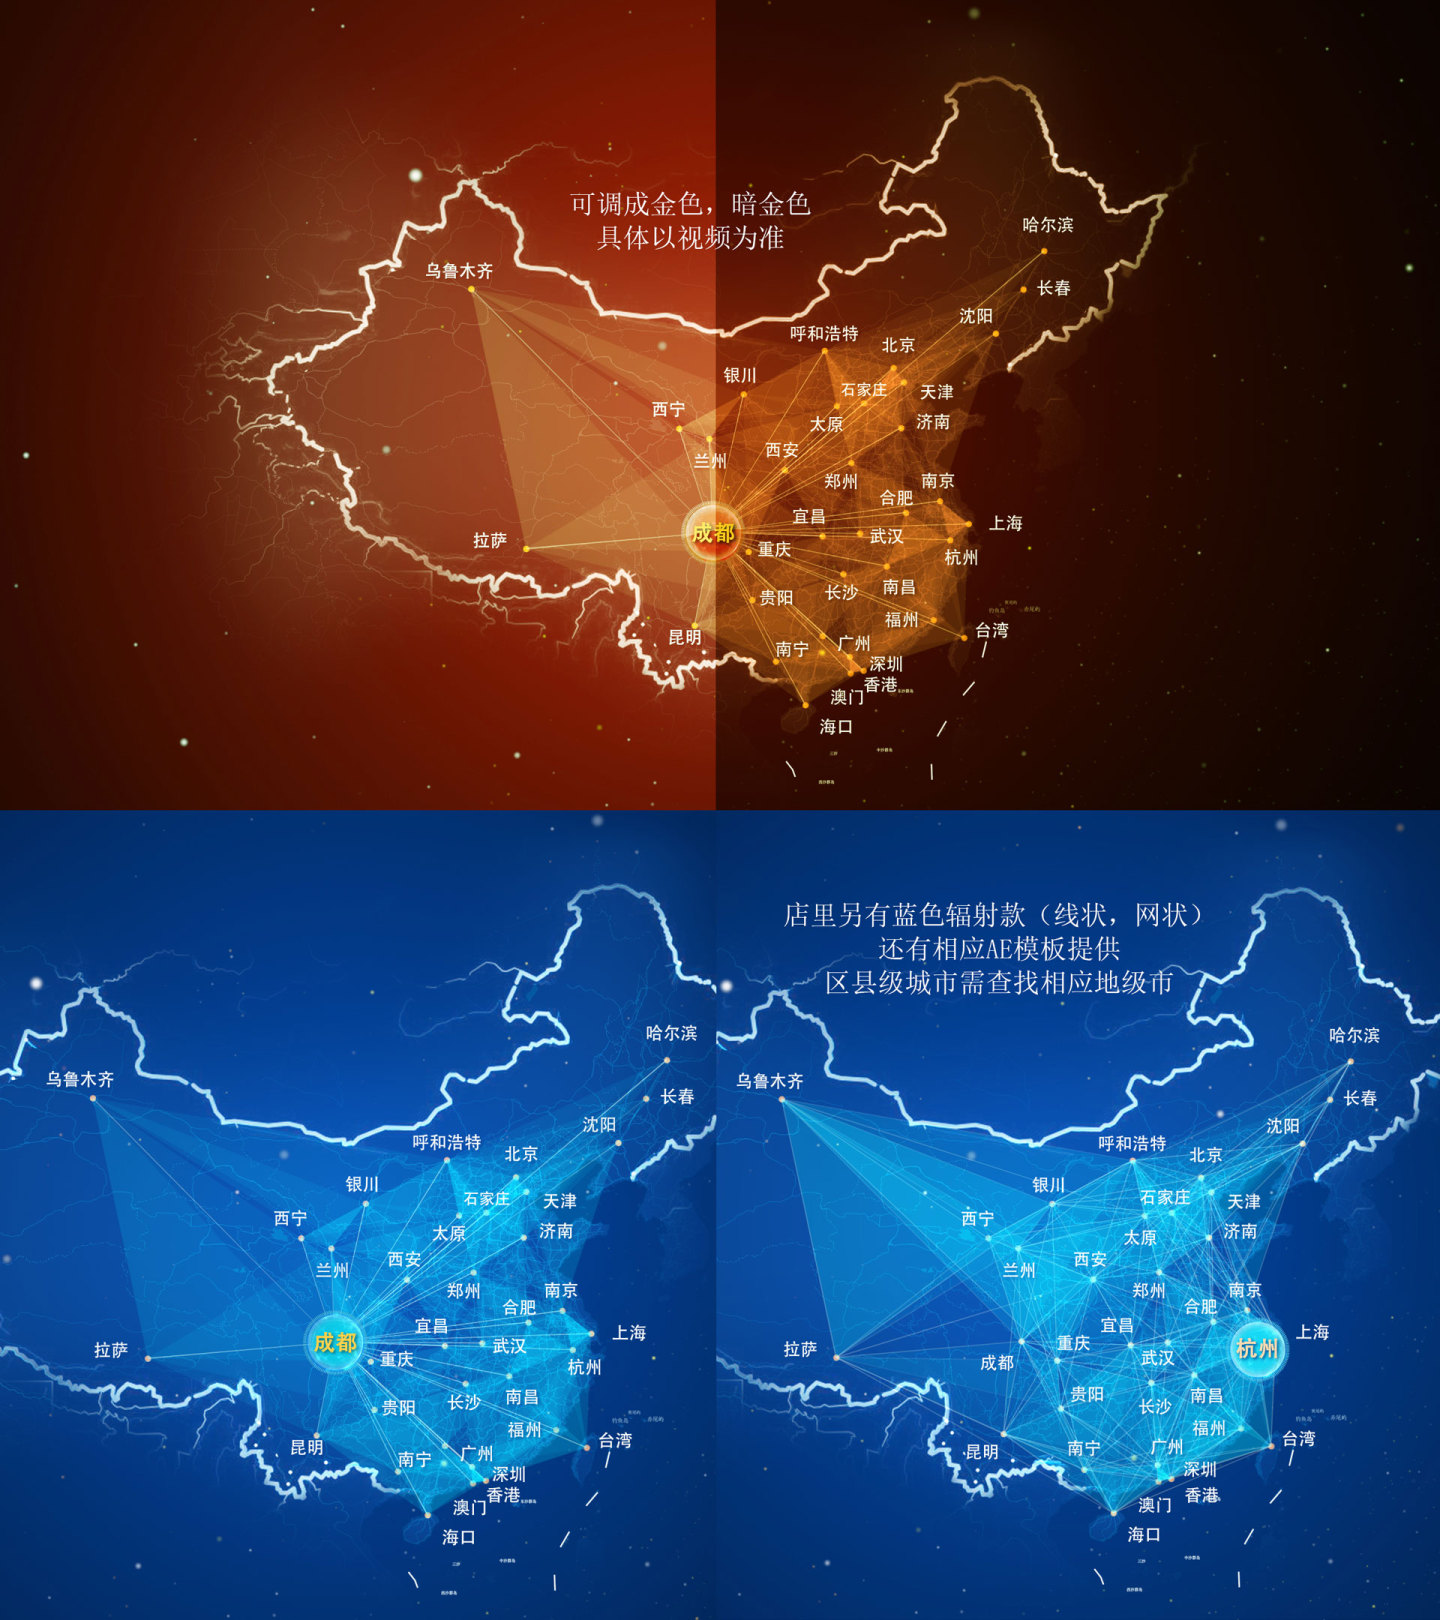 河北 地图辐射 辐射世界 辐射中国